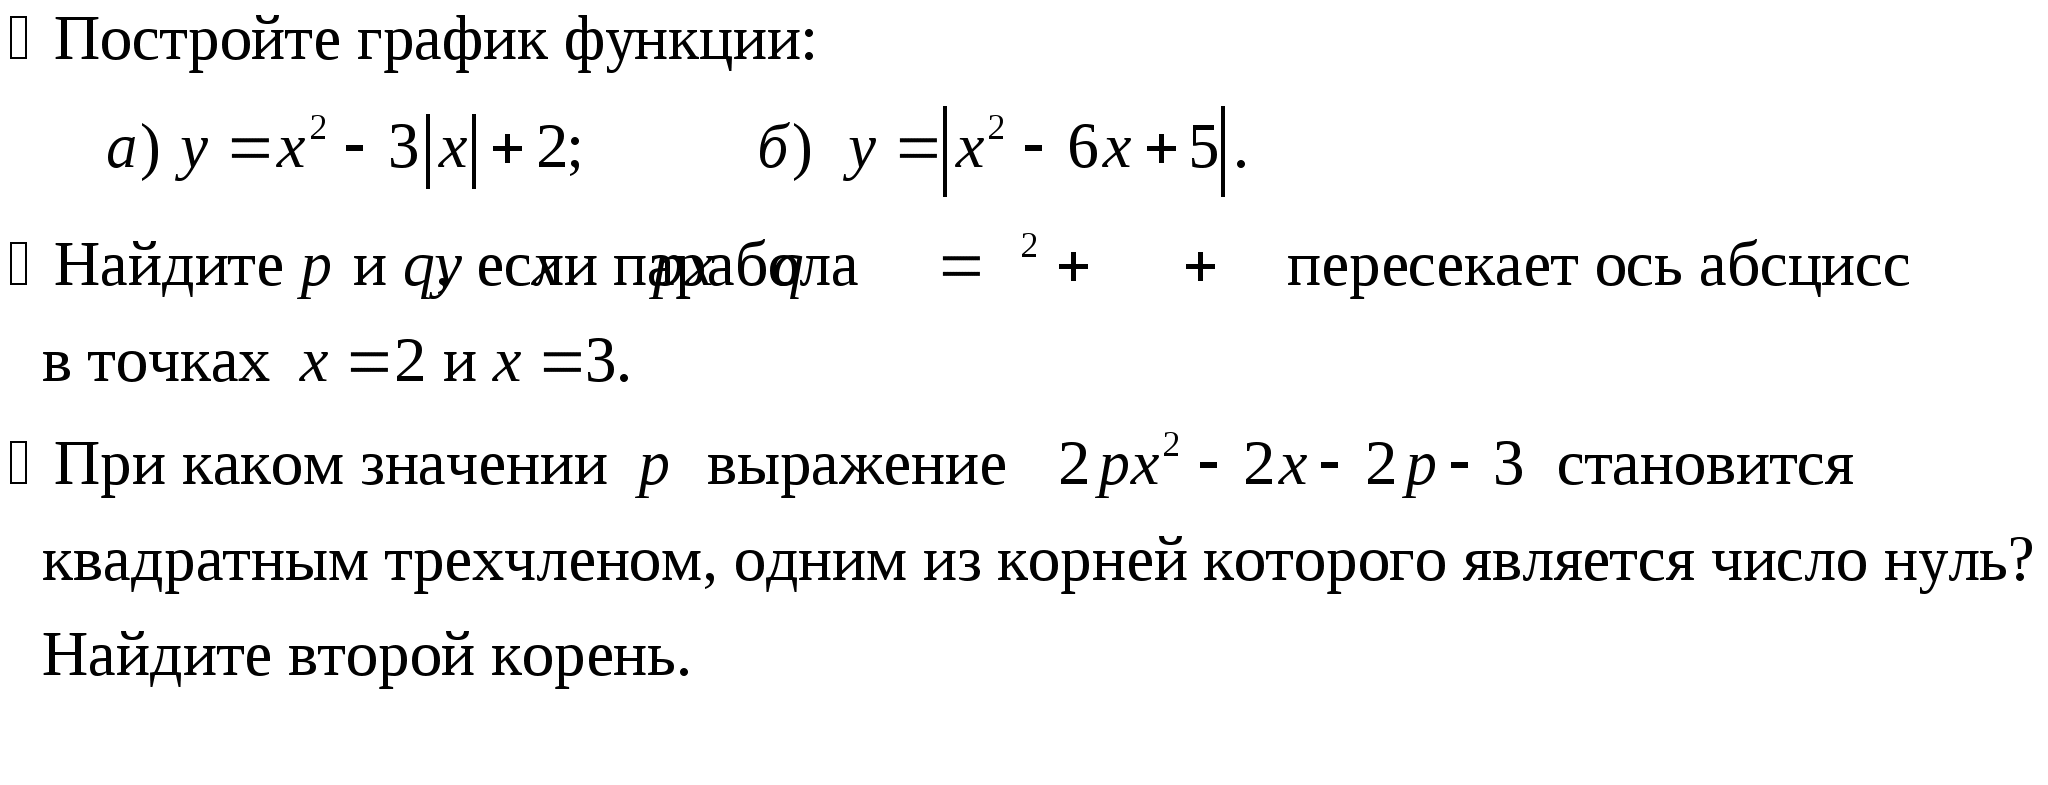 Рабочая программа по алгебре 9 класса (базовый уровень) по Ю. Н. Макарычеву и др.